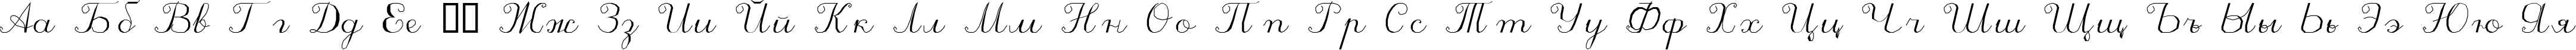 Пример написания русского алфавита шрифтом ScriptC